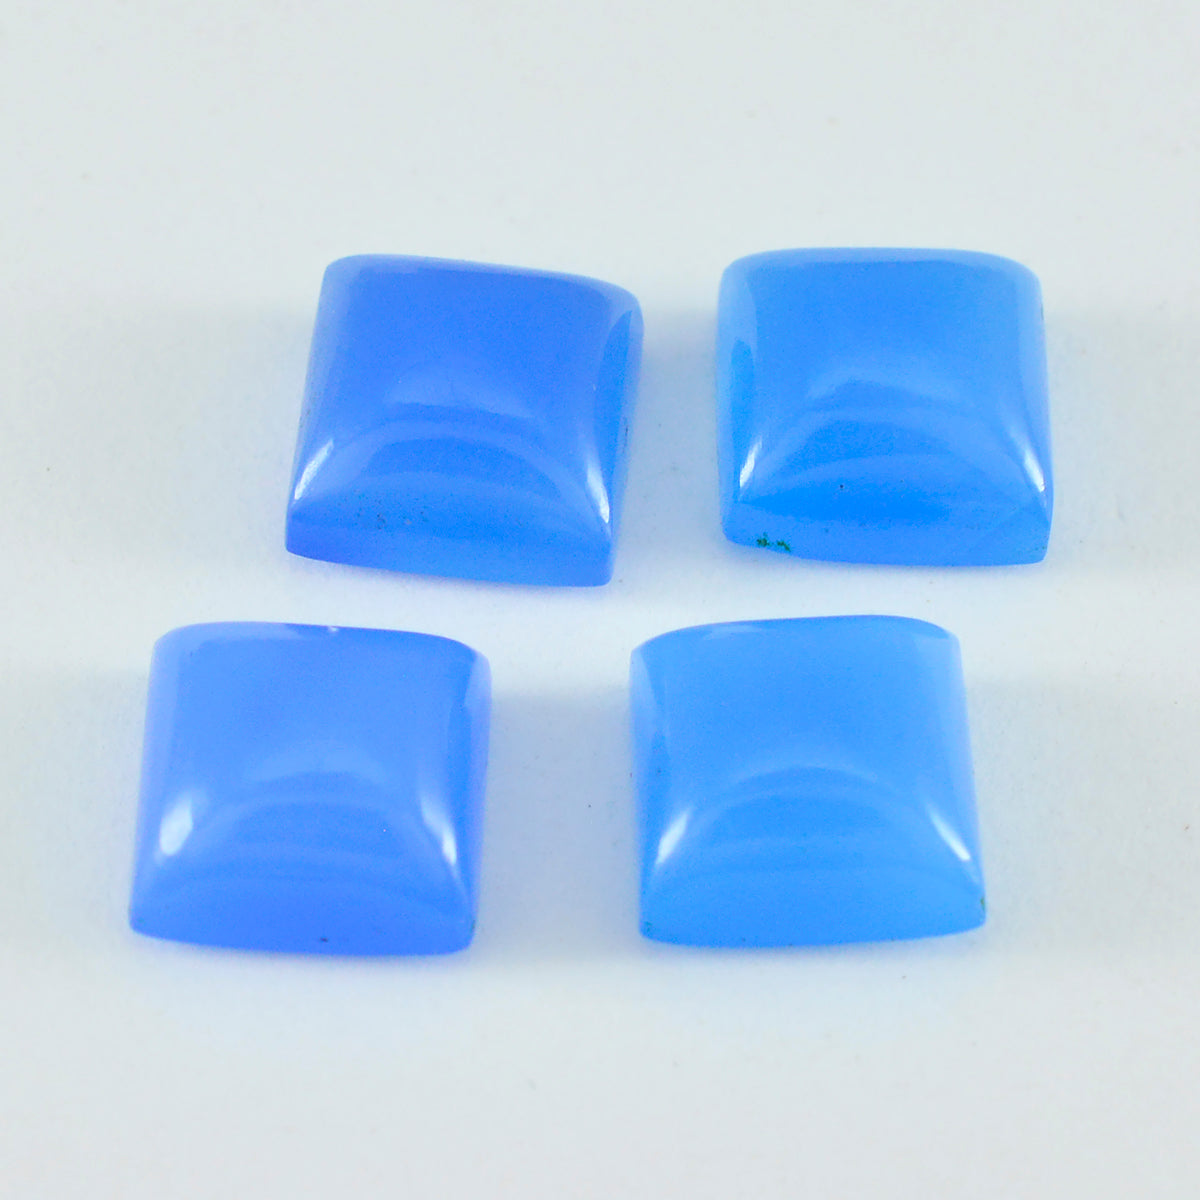 riyogems 1 шт. синий халцедон кабошон 11x11 мм квадратной формы красивые качественные свободные драгоценные камни